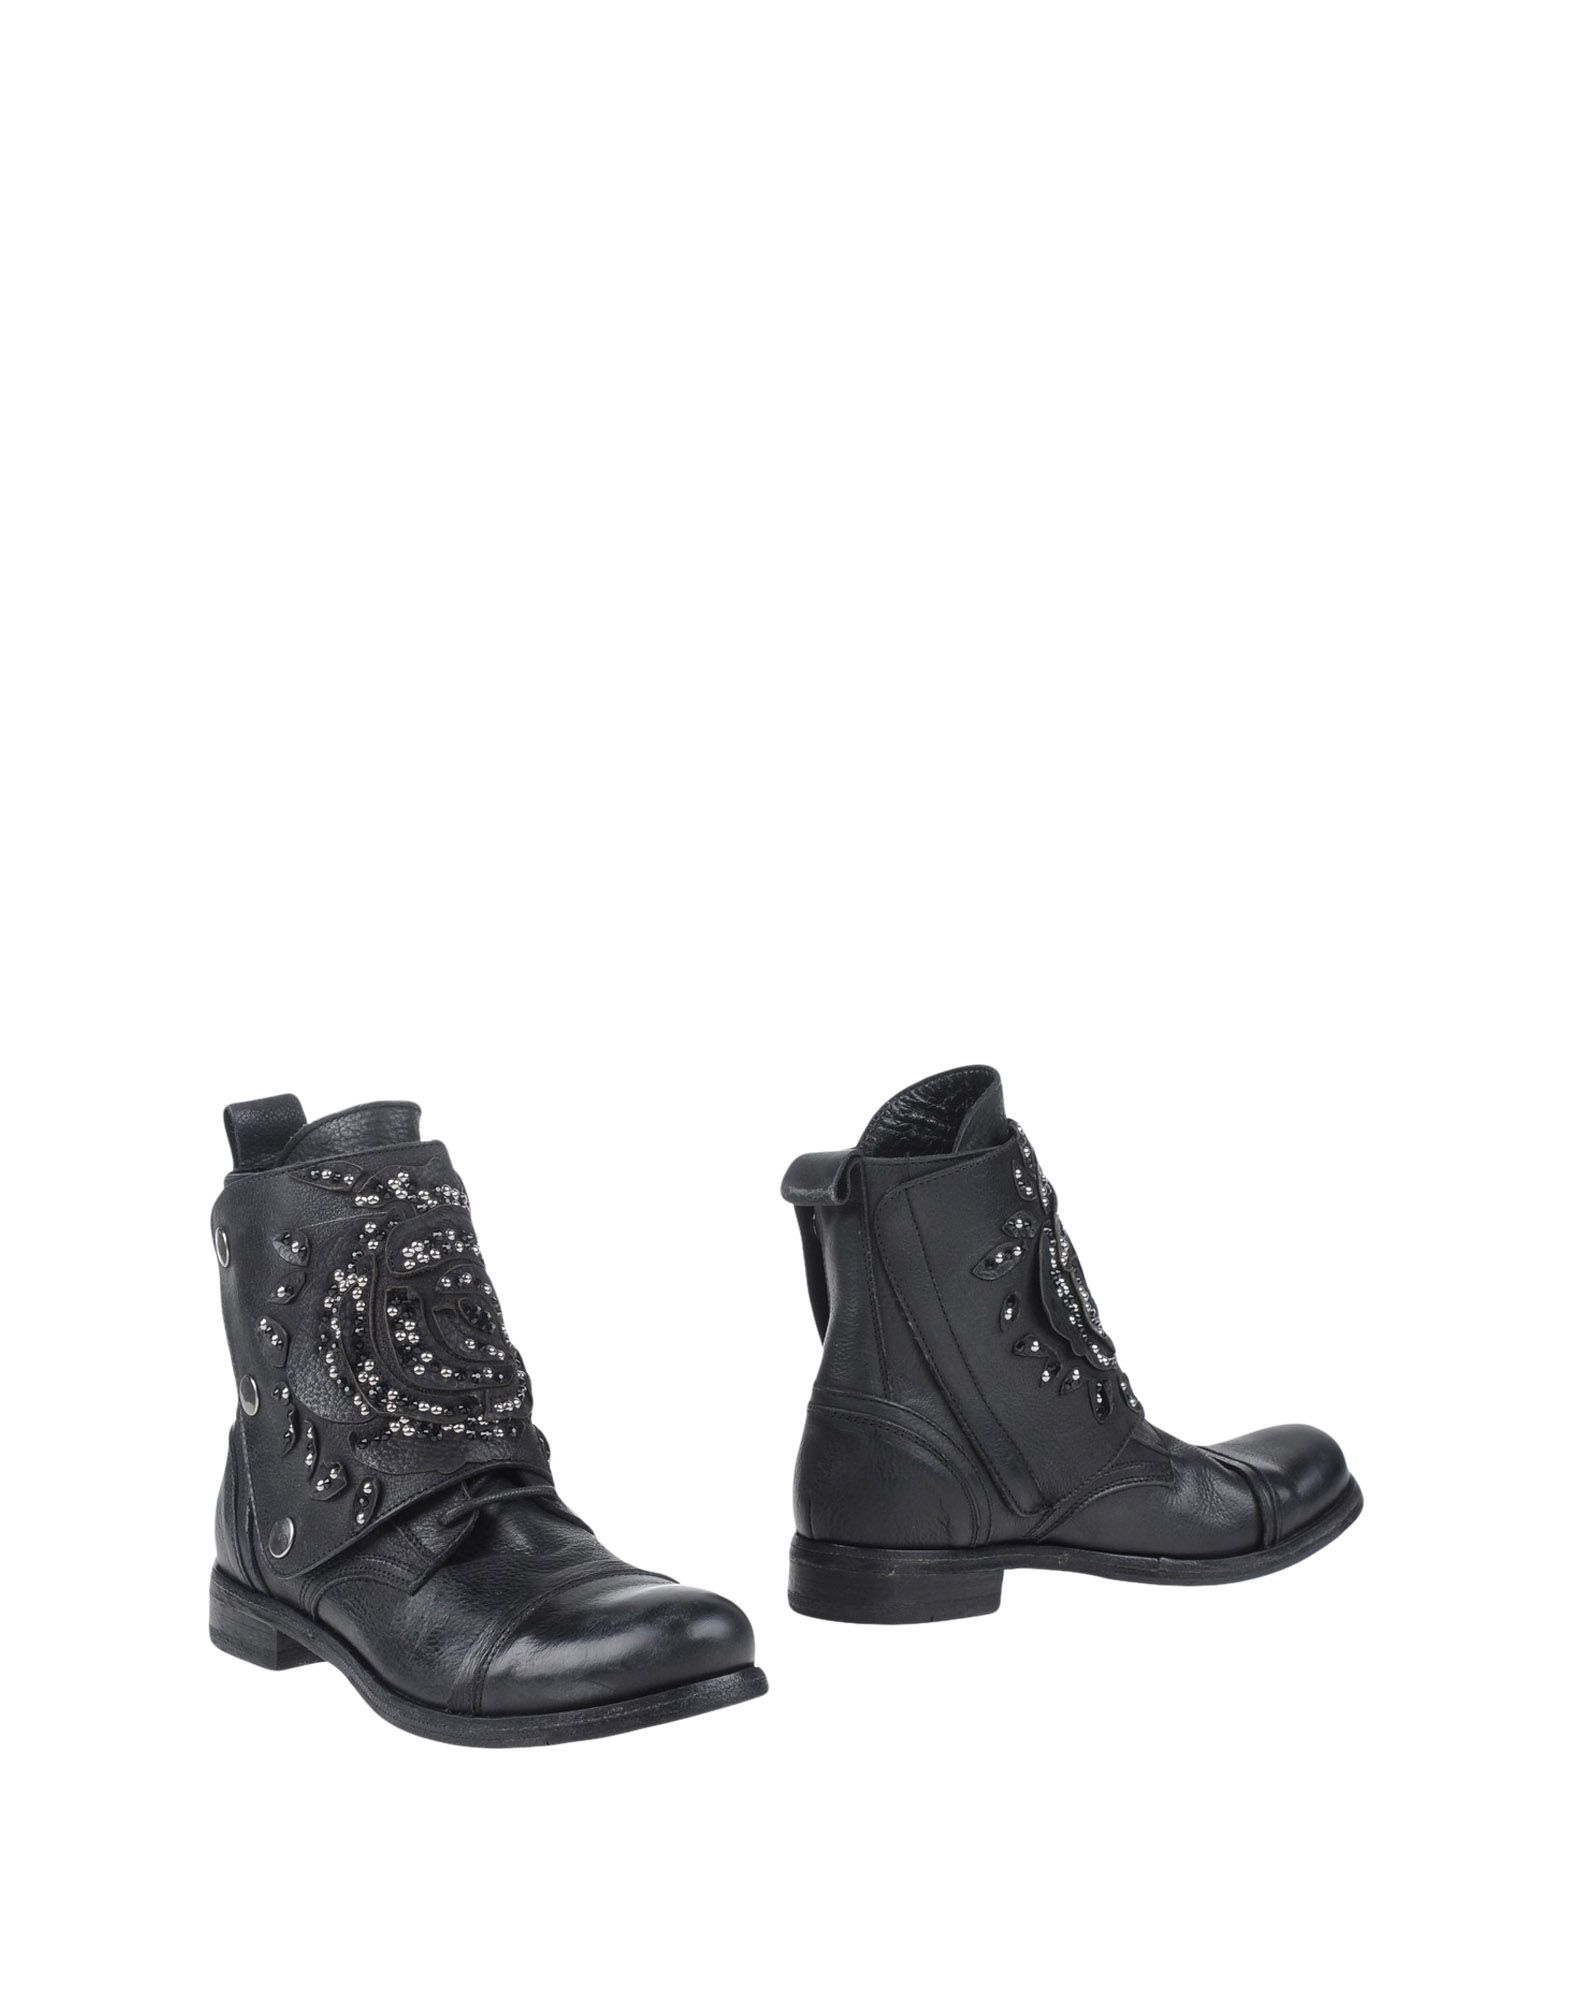 Lyst - Savio Barbato Ankle Boots in Black